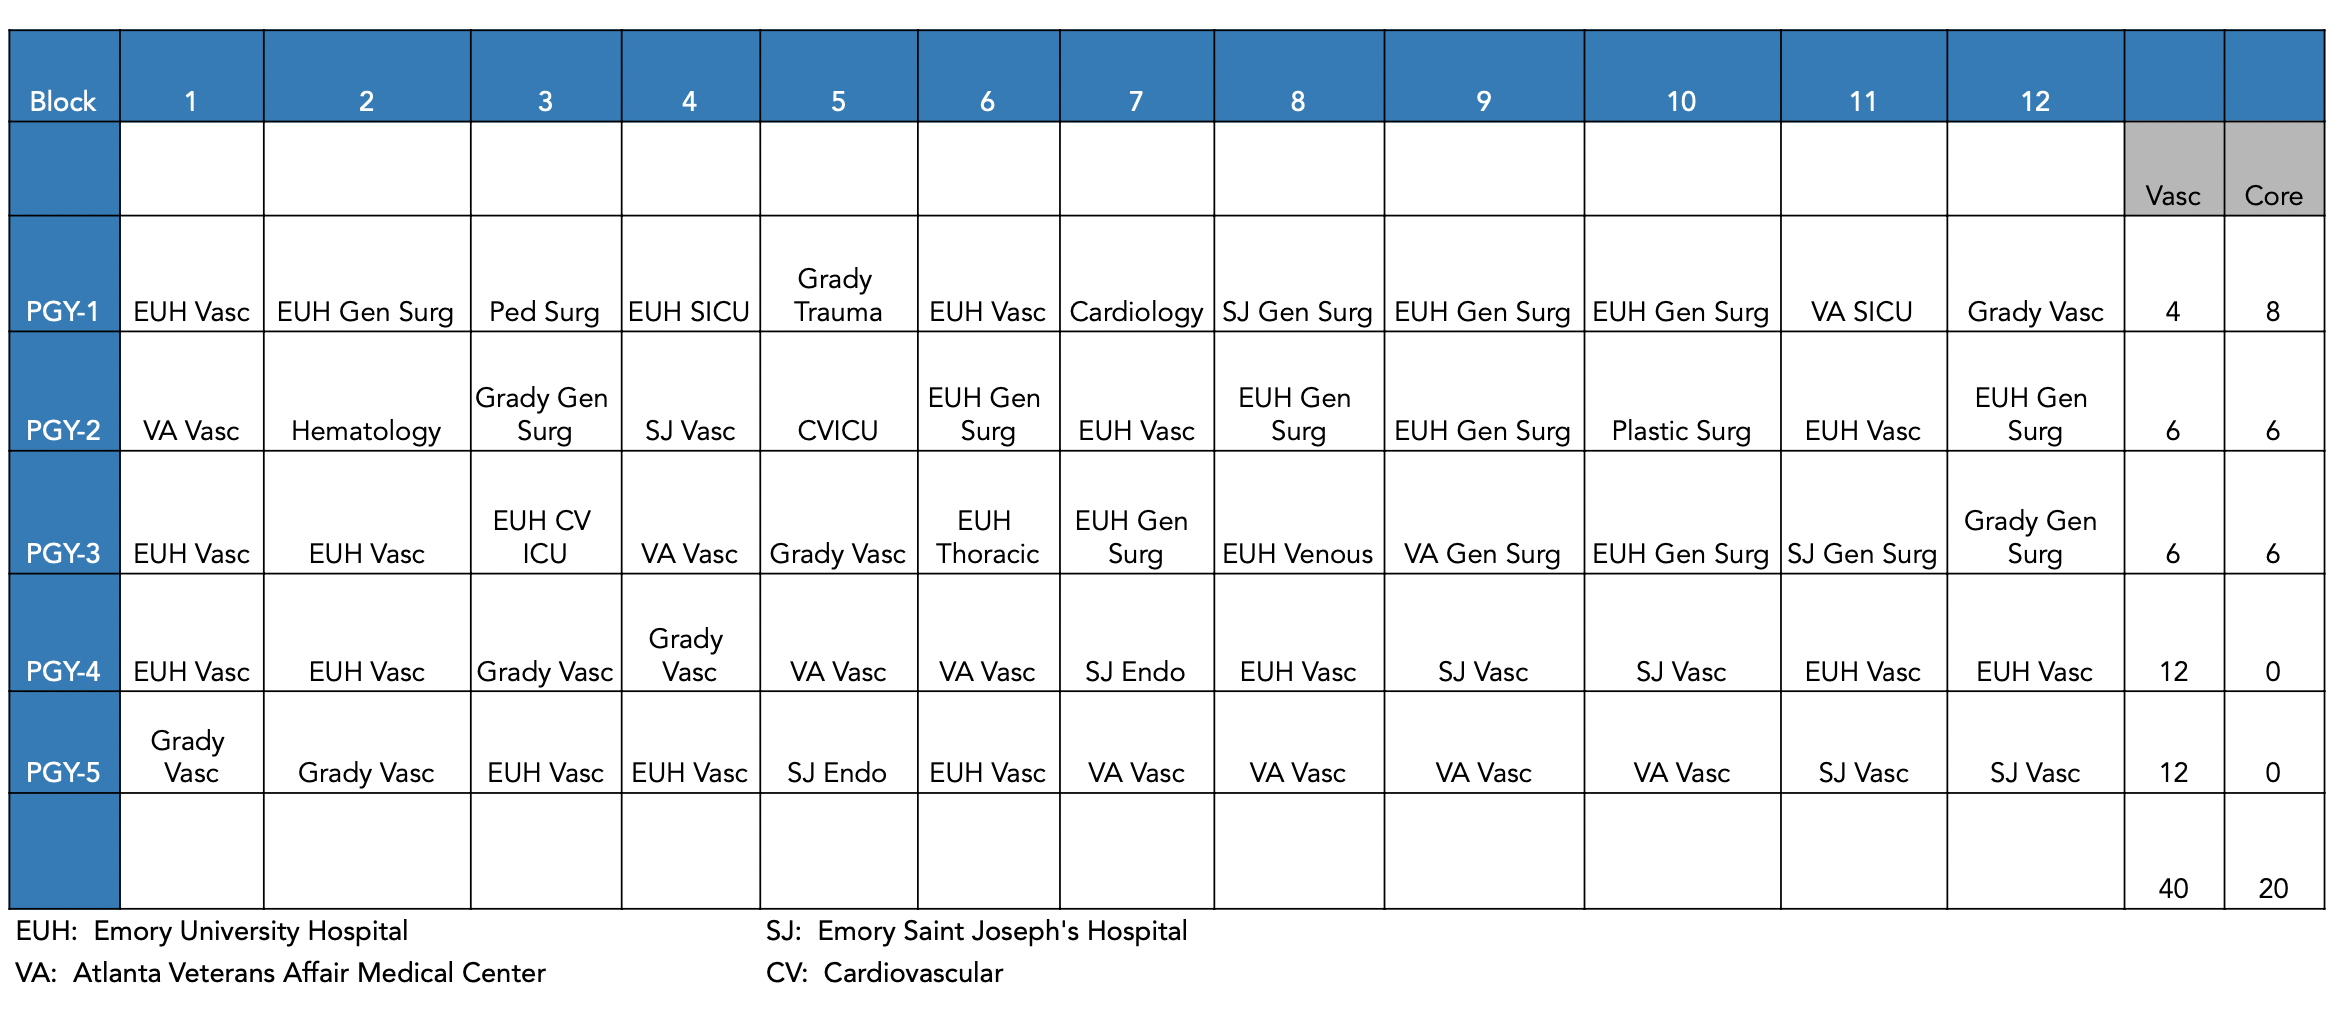 Vascular Surgery Spreadsheet 2